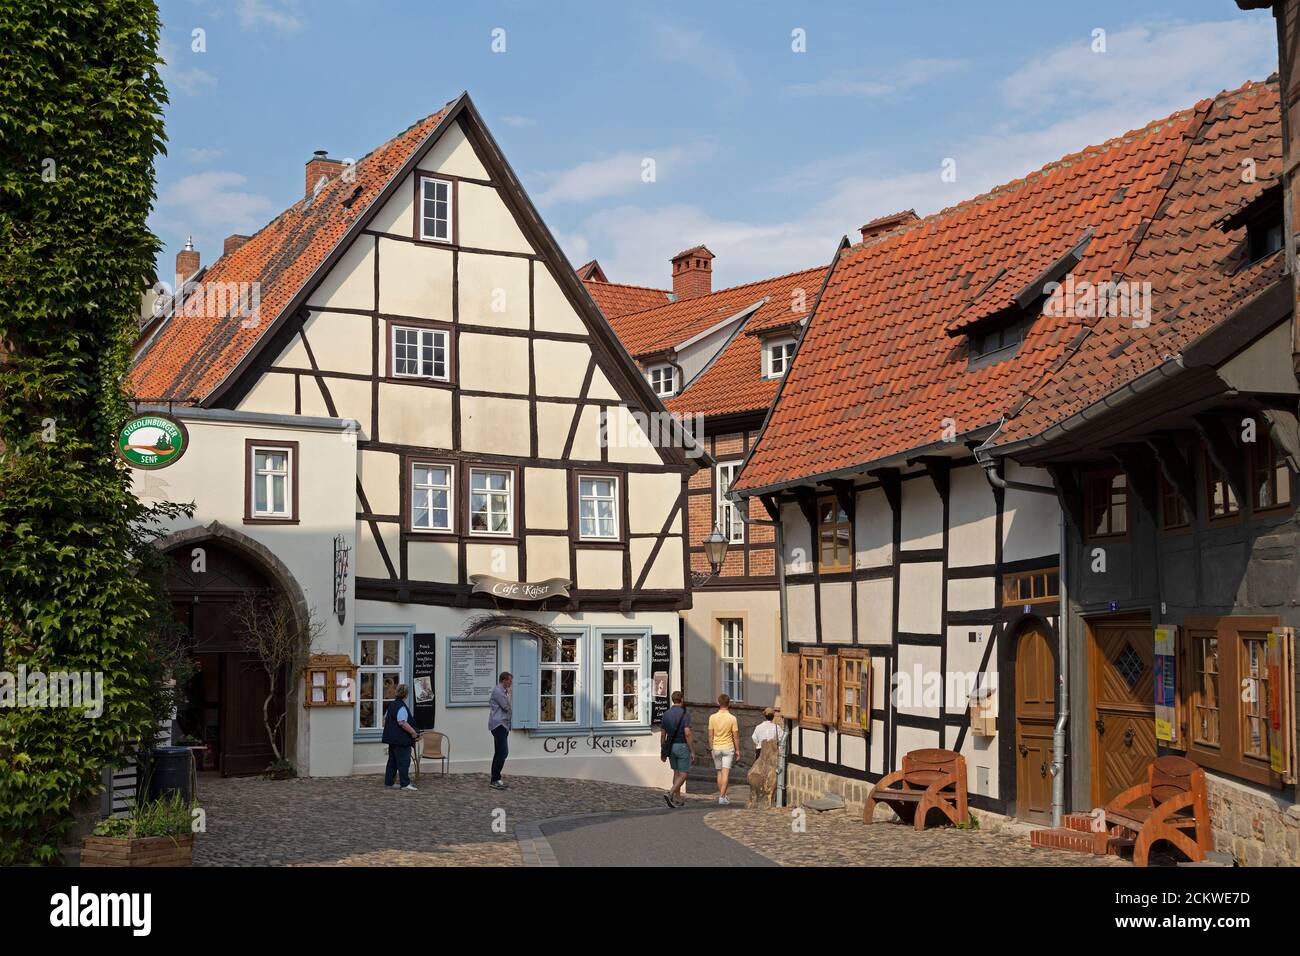 Maisons en bois, Schlossberg (colline du château), Quedlinburg, patrimoine culturel mondial de l'UNESCO, Saxe Anhalt, Allemagne Banque D'Images